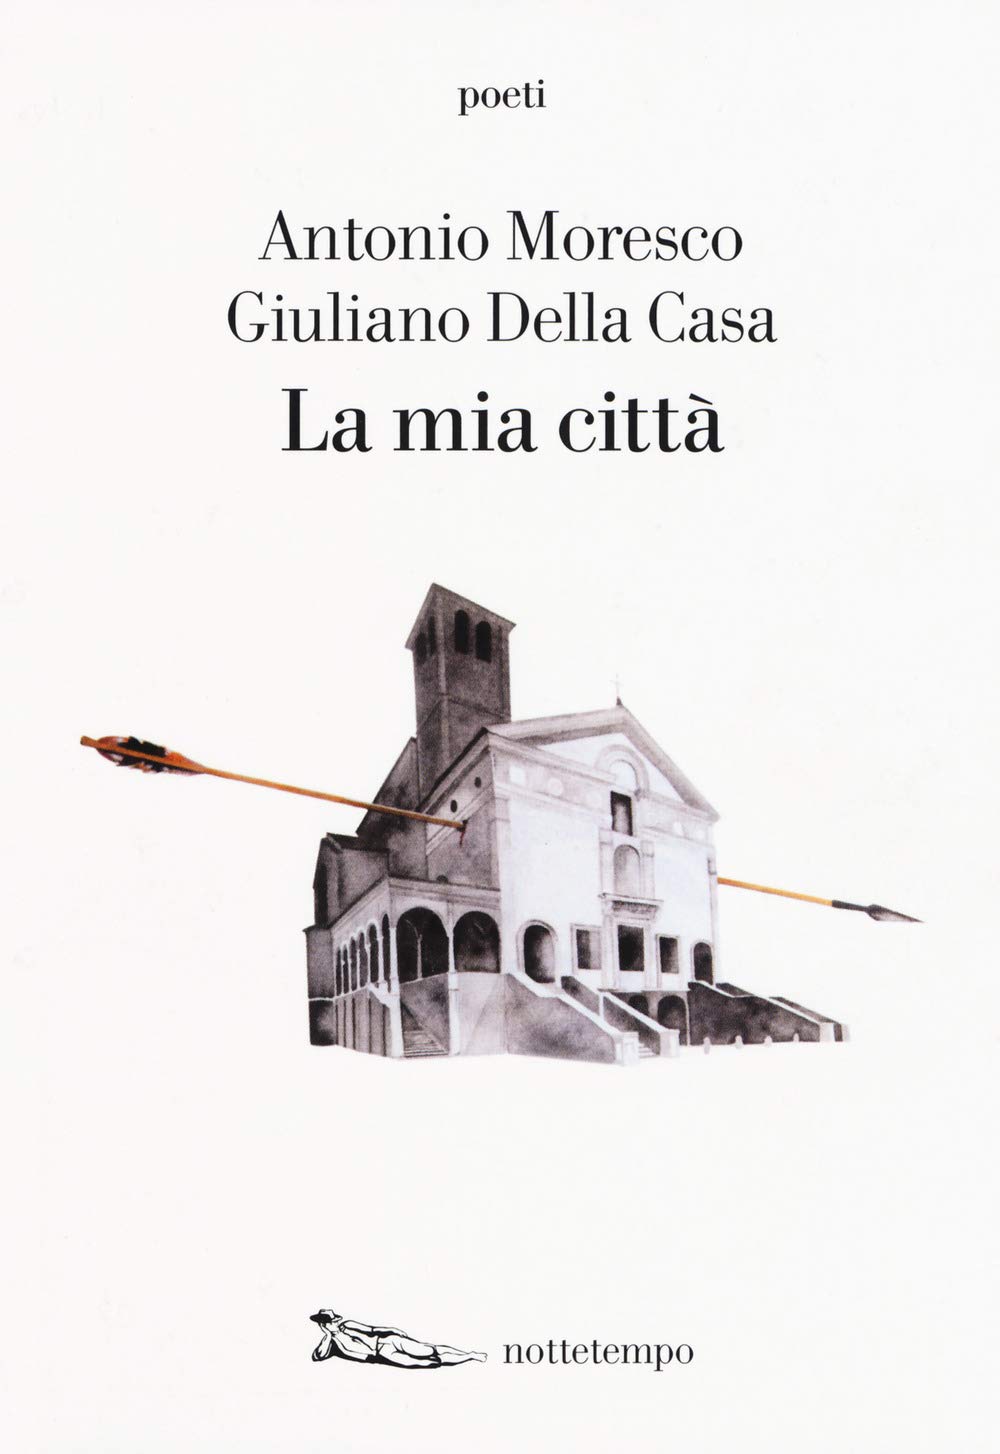 Antonio Moresco & Giuliano Della Casa – La mia città – Nottetempo